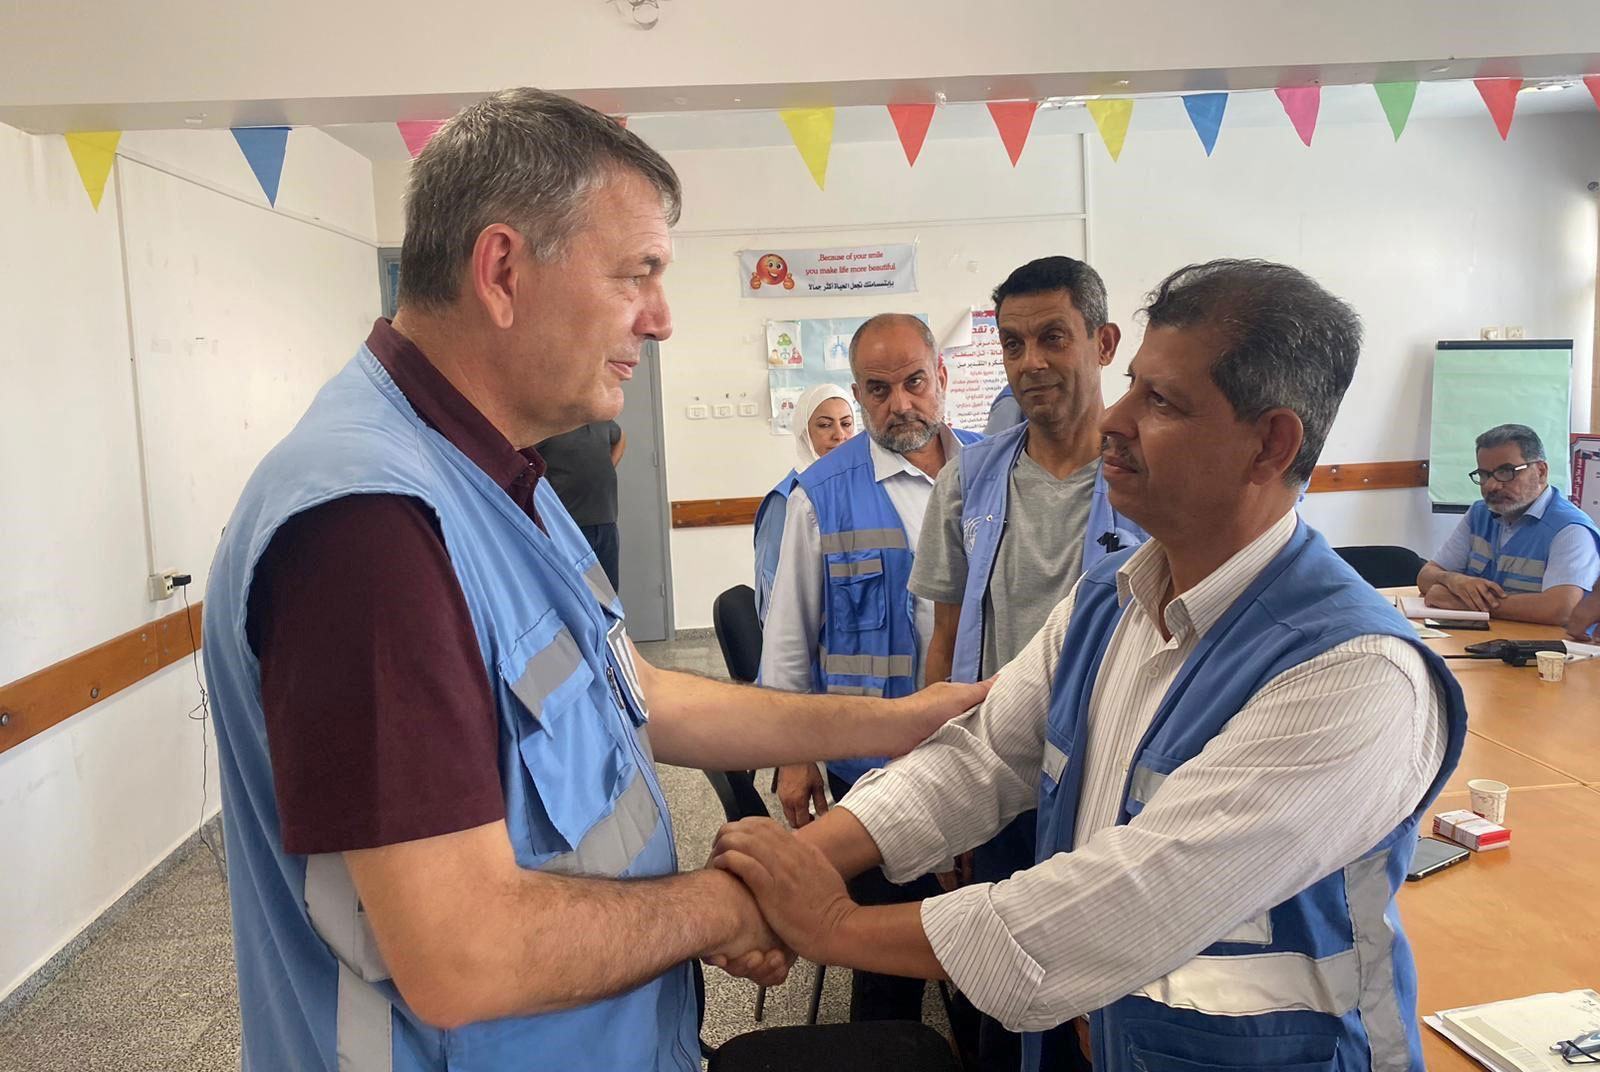 اقوام متحدہ کے امدادی ادارے (انرا) کے سربراہ فلپ لازارینی غزہ میں اپنے ادارے کے کارکنوں کا حوصلہ بڑھا رہے ہیں (فائل فوٹو)۔